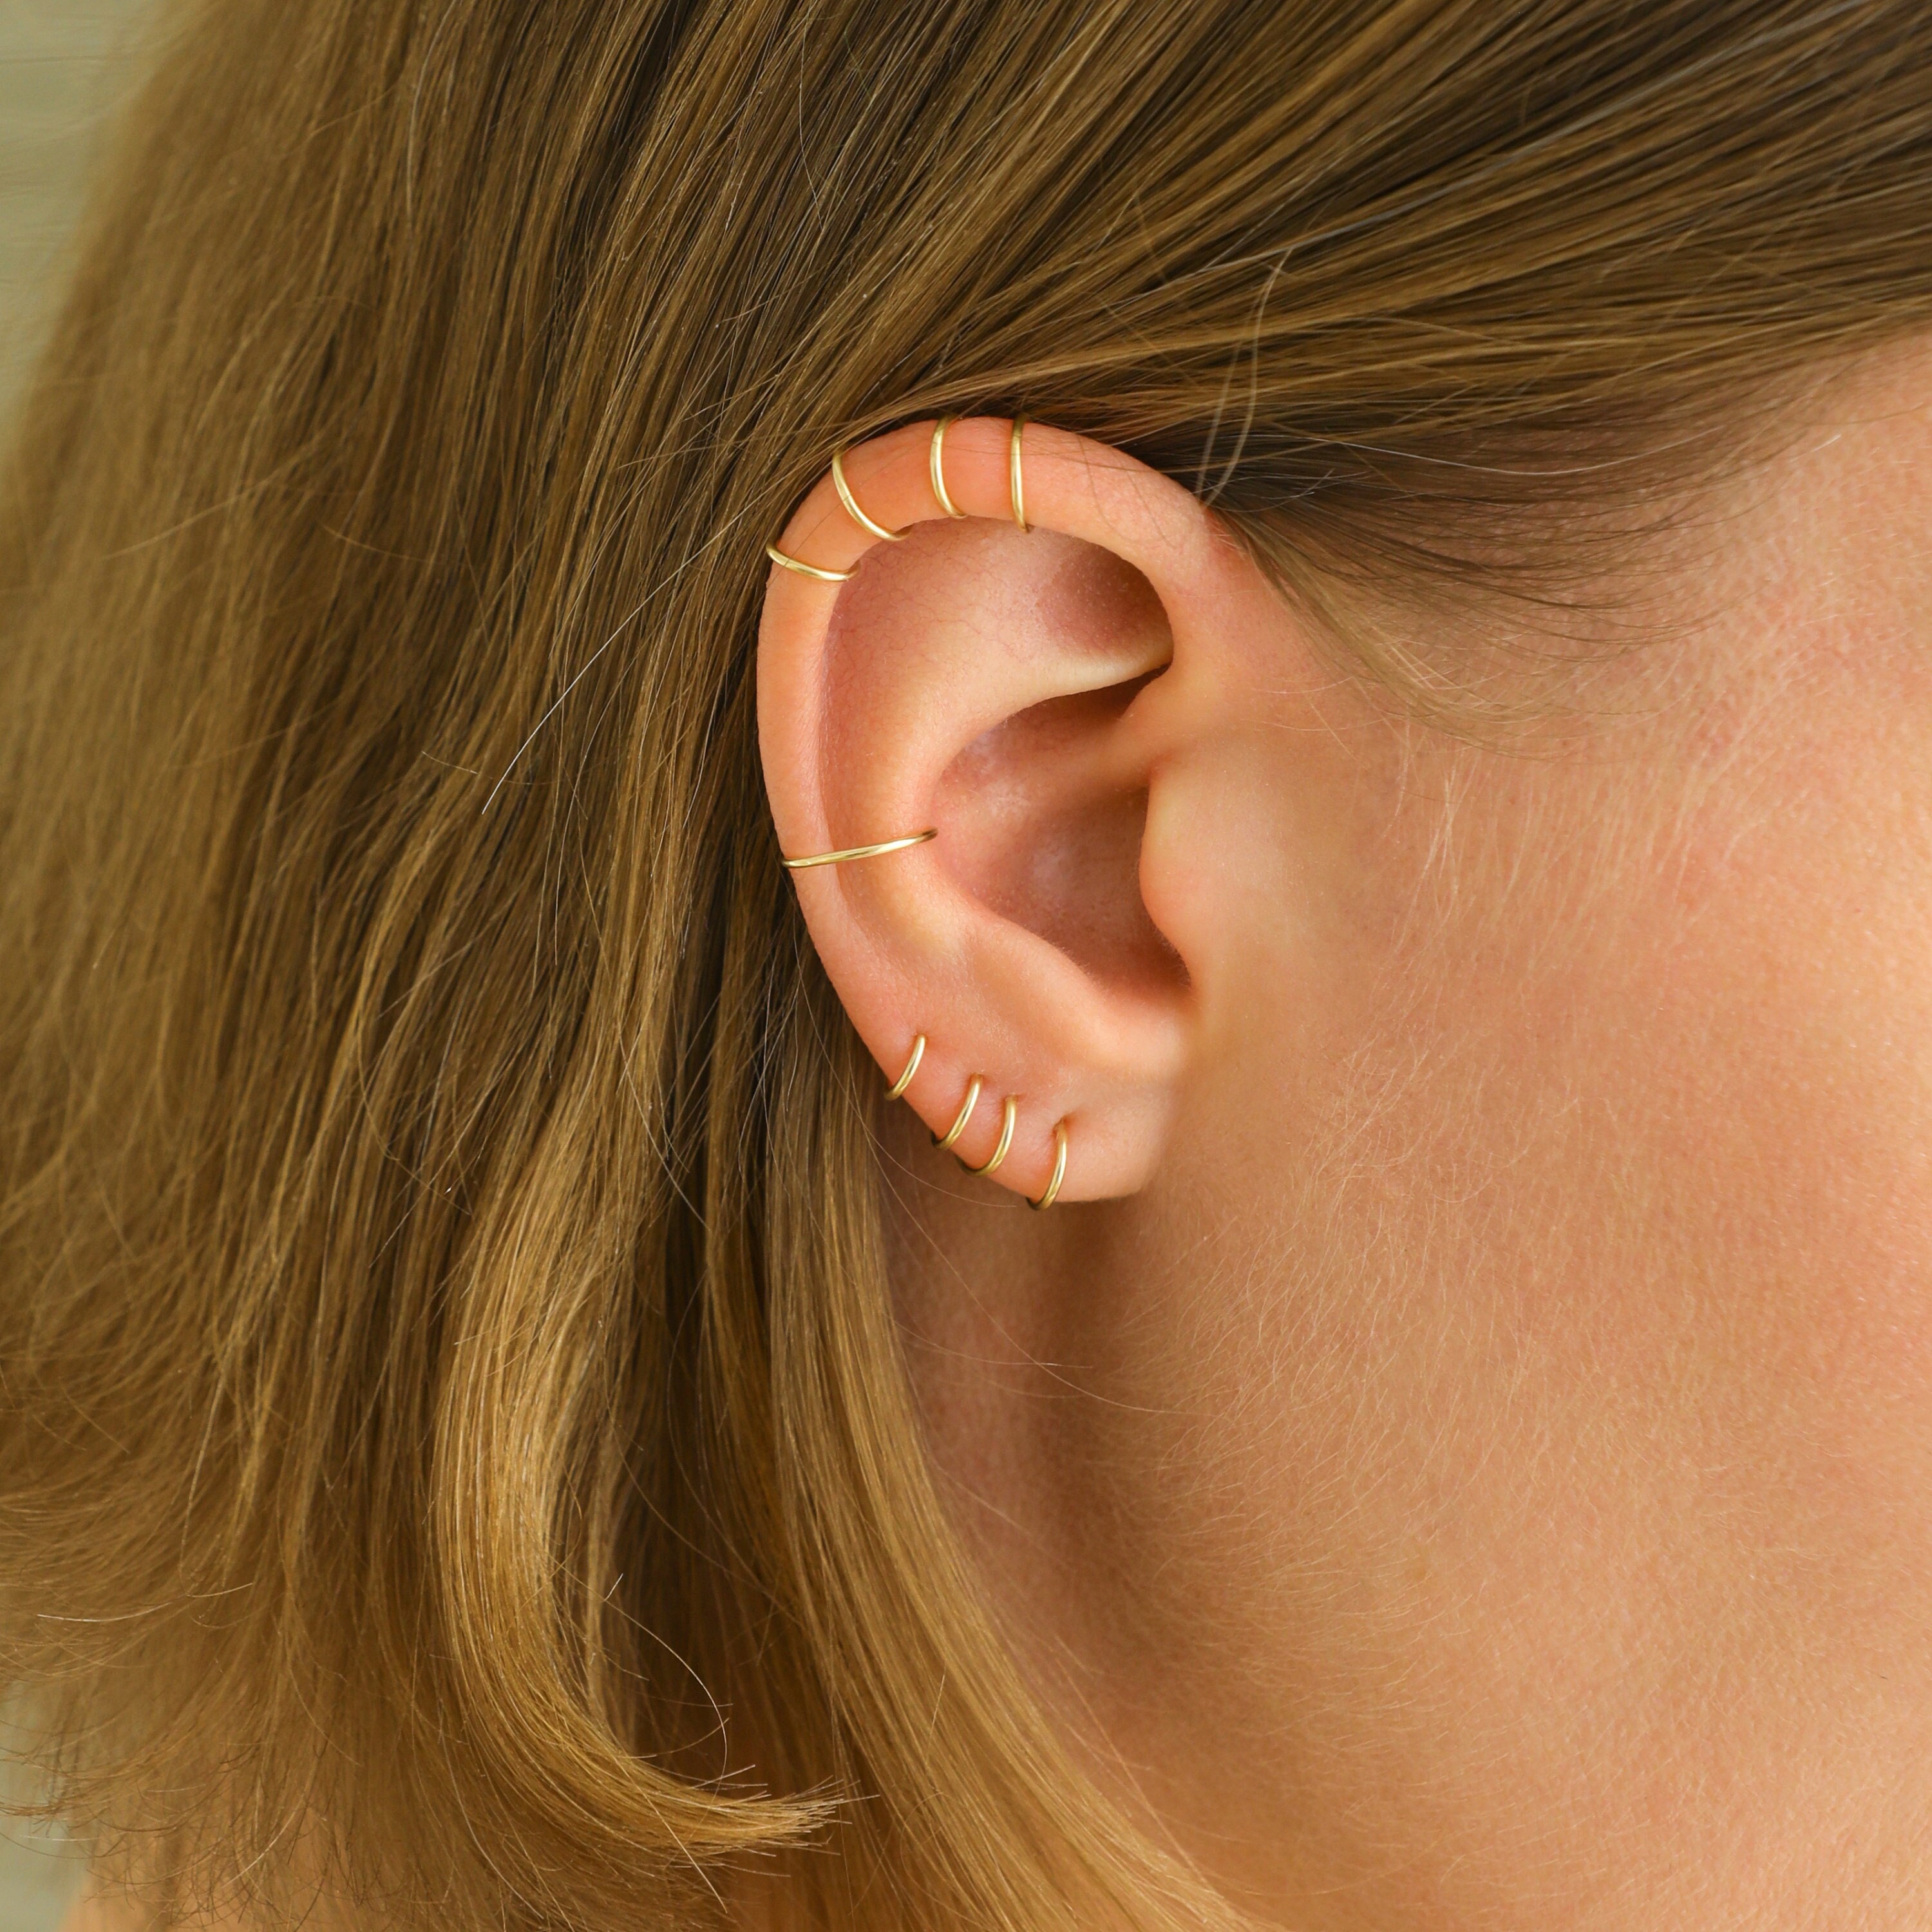 Naioewe Conch Earrings Gold Hoop Pearl Earrings Heart Hoop Earrings Stud  Hoop Earrings Small Gold Hoops Gold Plated Small Hoops 